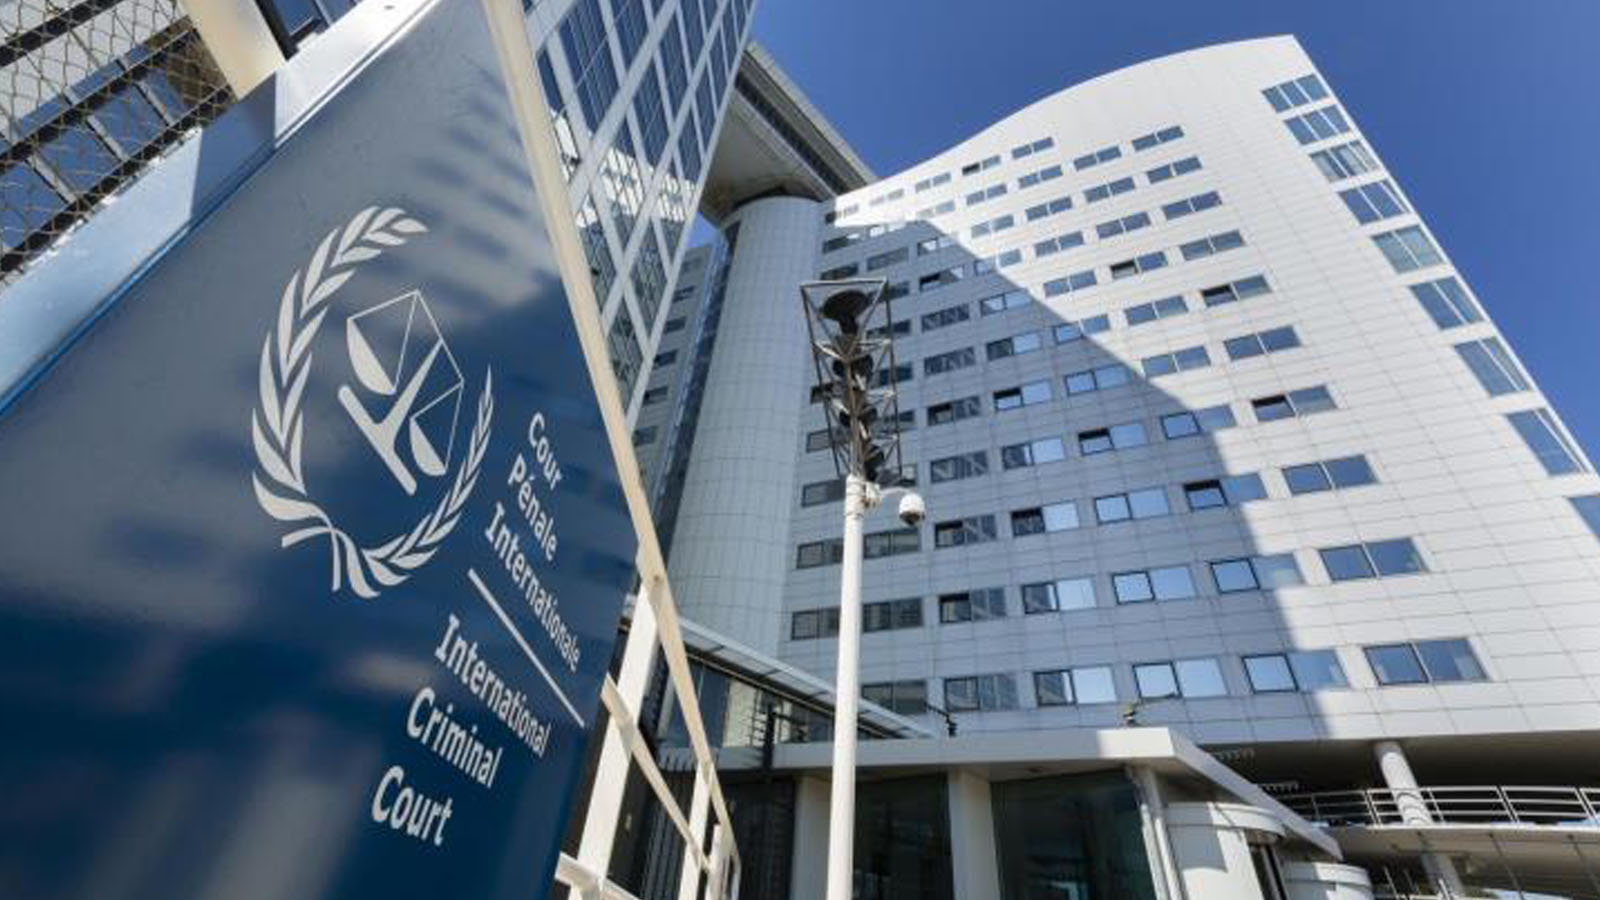 إسرائيل تطالب سفاراتها بالاستعداد ل"موجة معادية"..مصدرها المحكمة الجنائية